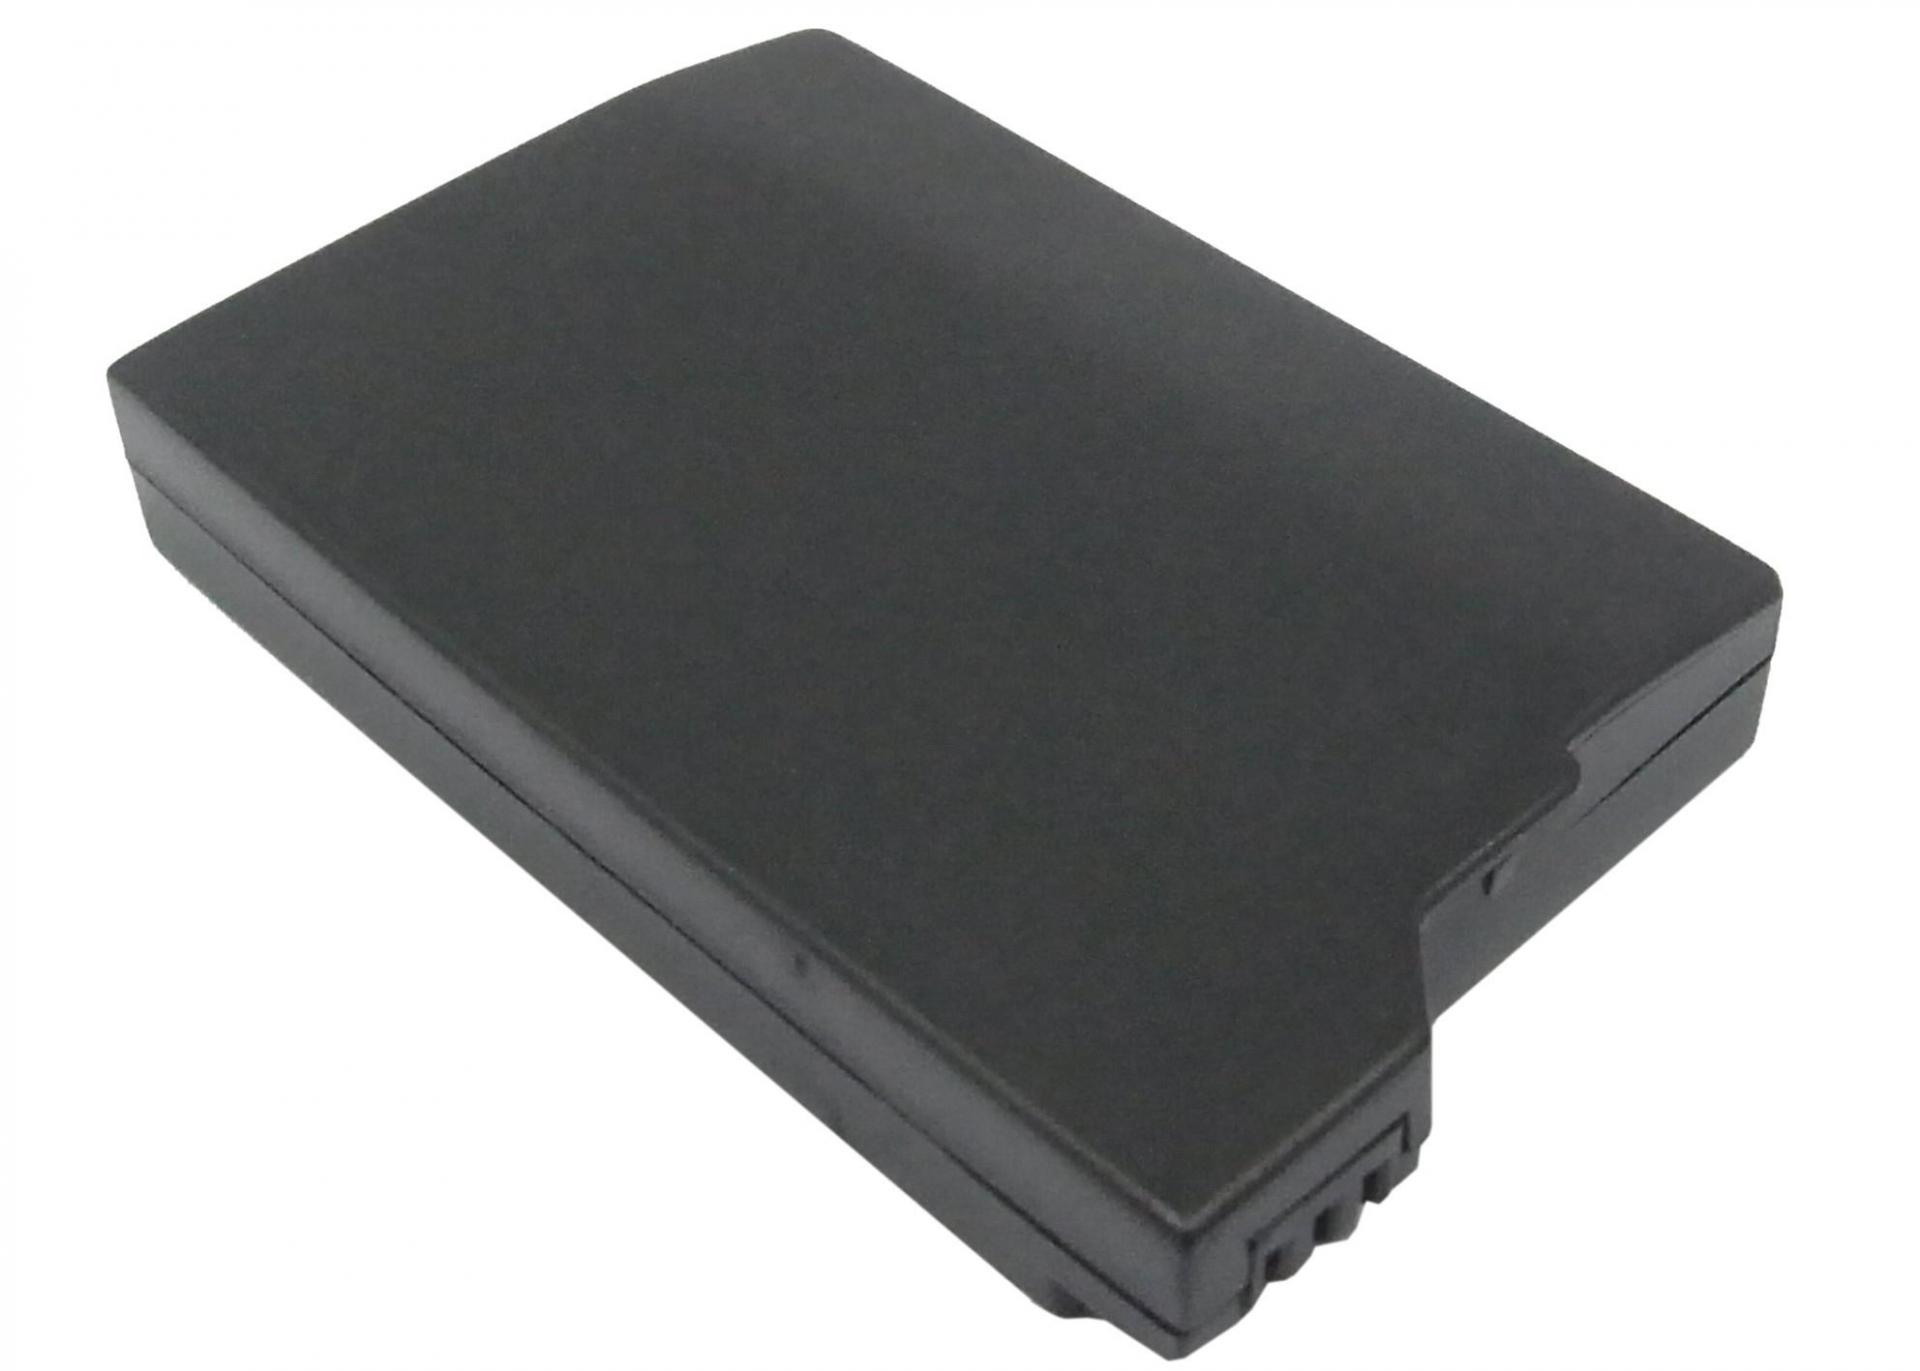 3.7V 1200mAh Battery PSP-S110 for PSP 2th,PSP-2000,PSP-3000,PSP-3004,Silm,PSP-3001,PSP-3008 Lithium Ion Battery Pack